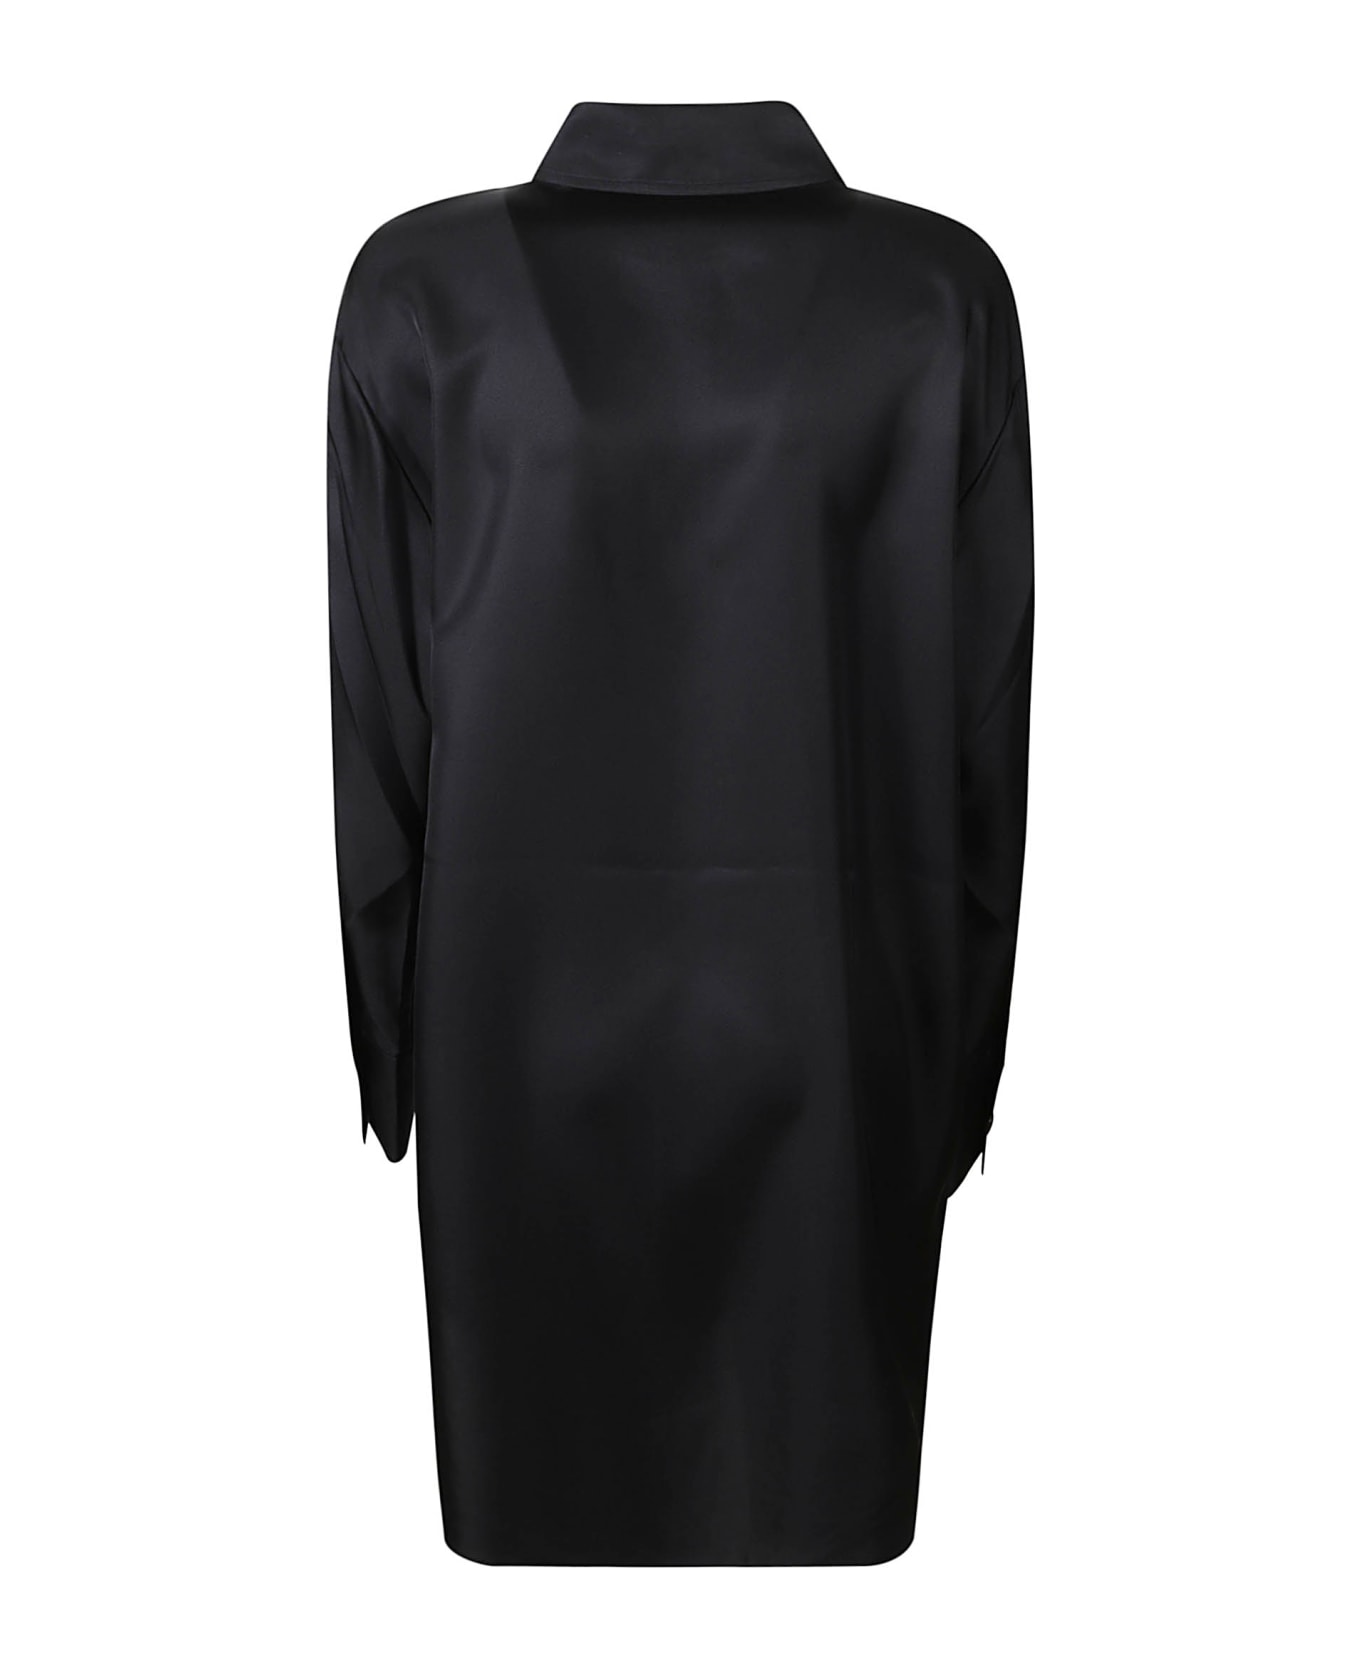 Róhe Long Plain Shirt Dress - Black